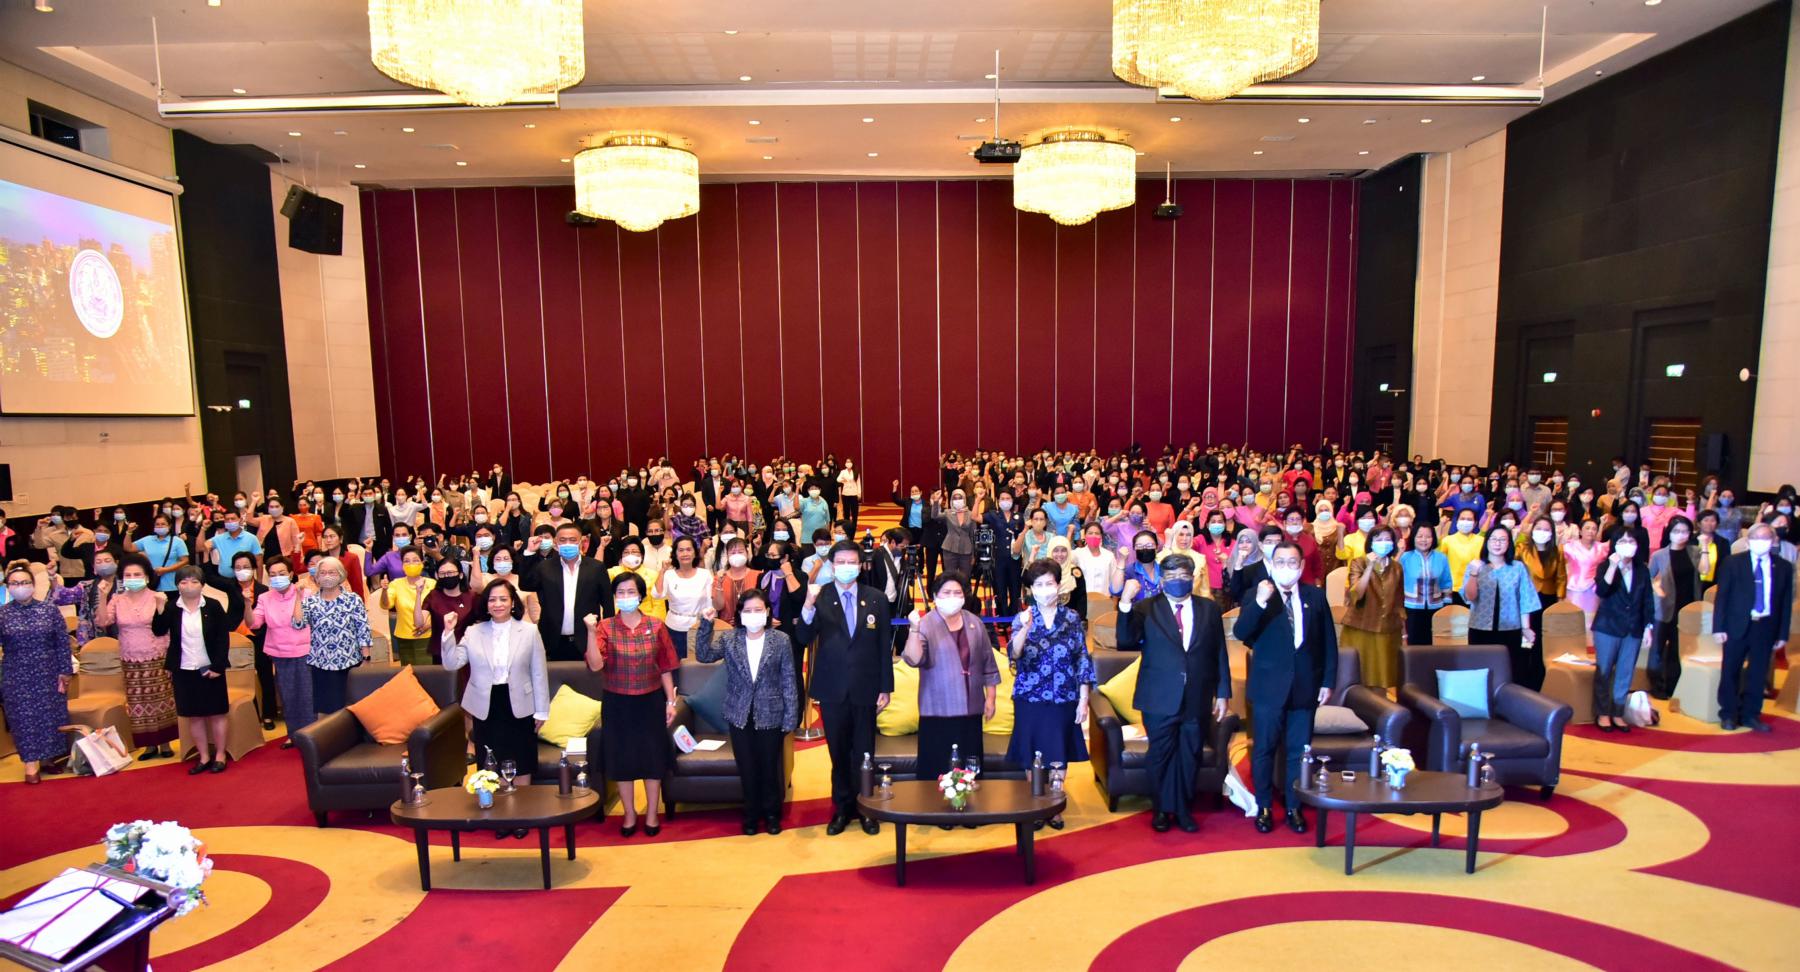 ในพิธีเปิดการประชุมสมัชชาสตรีและครอบครัวระดับชาติ ประจำปี 2563 ภายใต้แนวคิด “สานพลังสังคมไทย สร้างครอบครัวคุณภาพ สู่ชีวิตวิถีใหม่